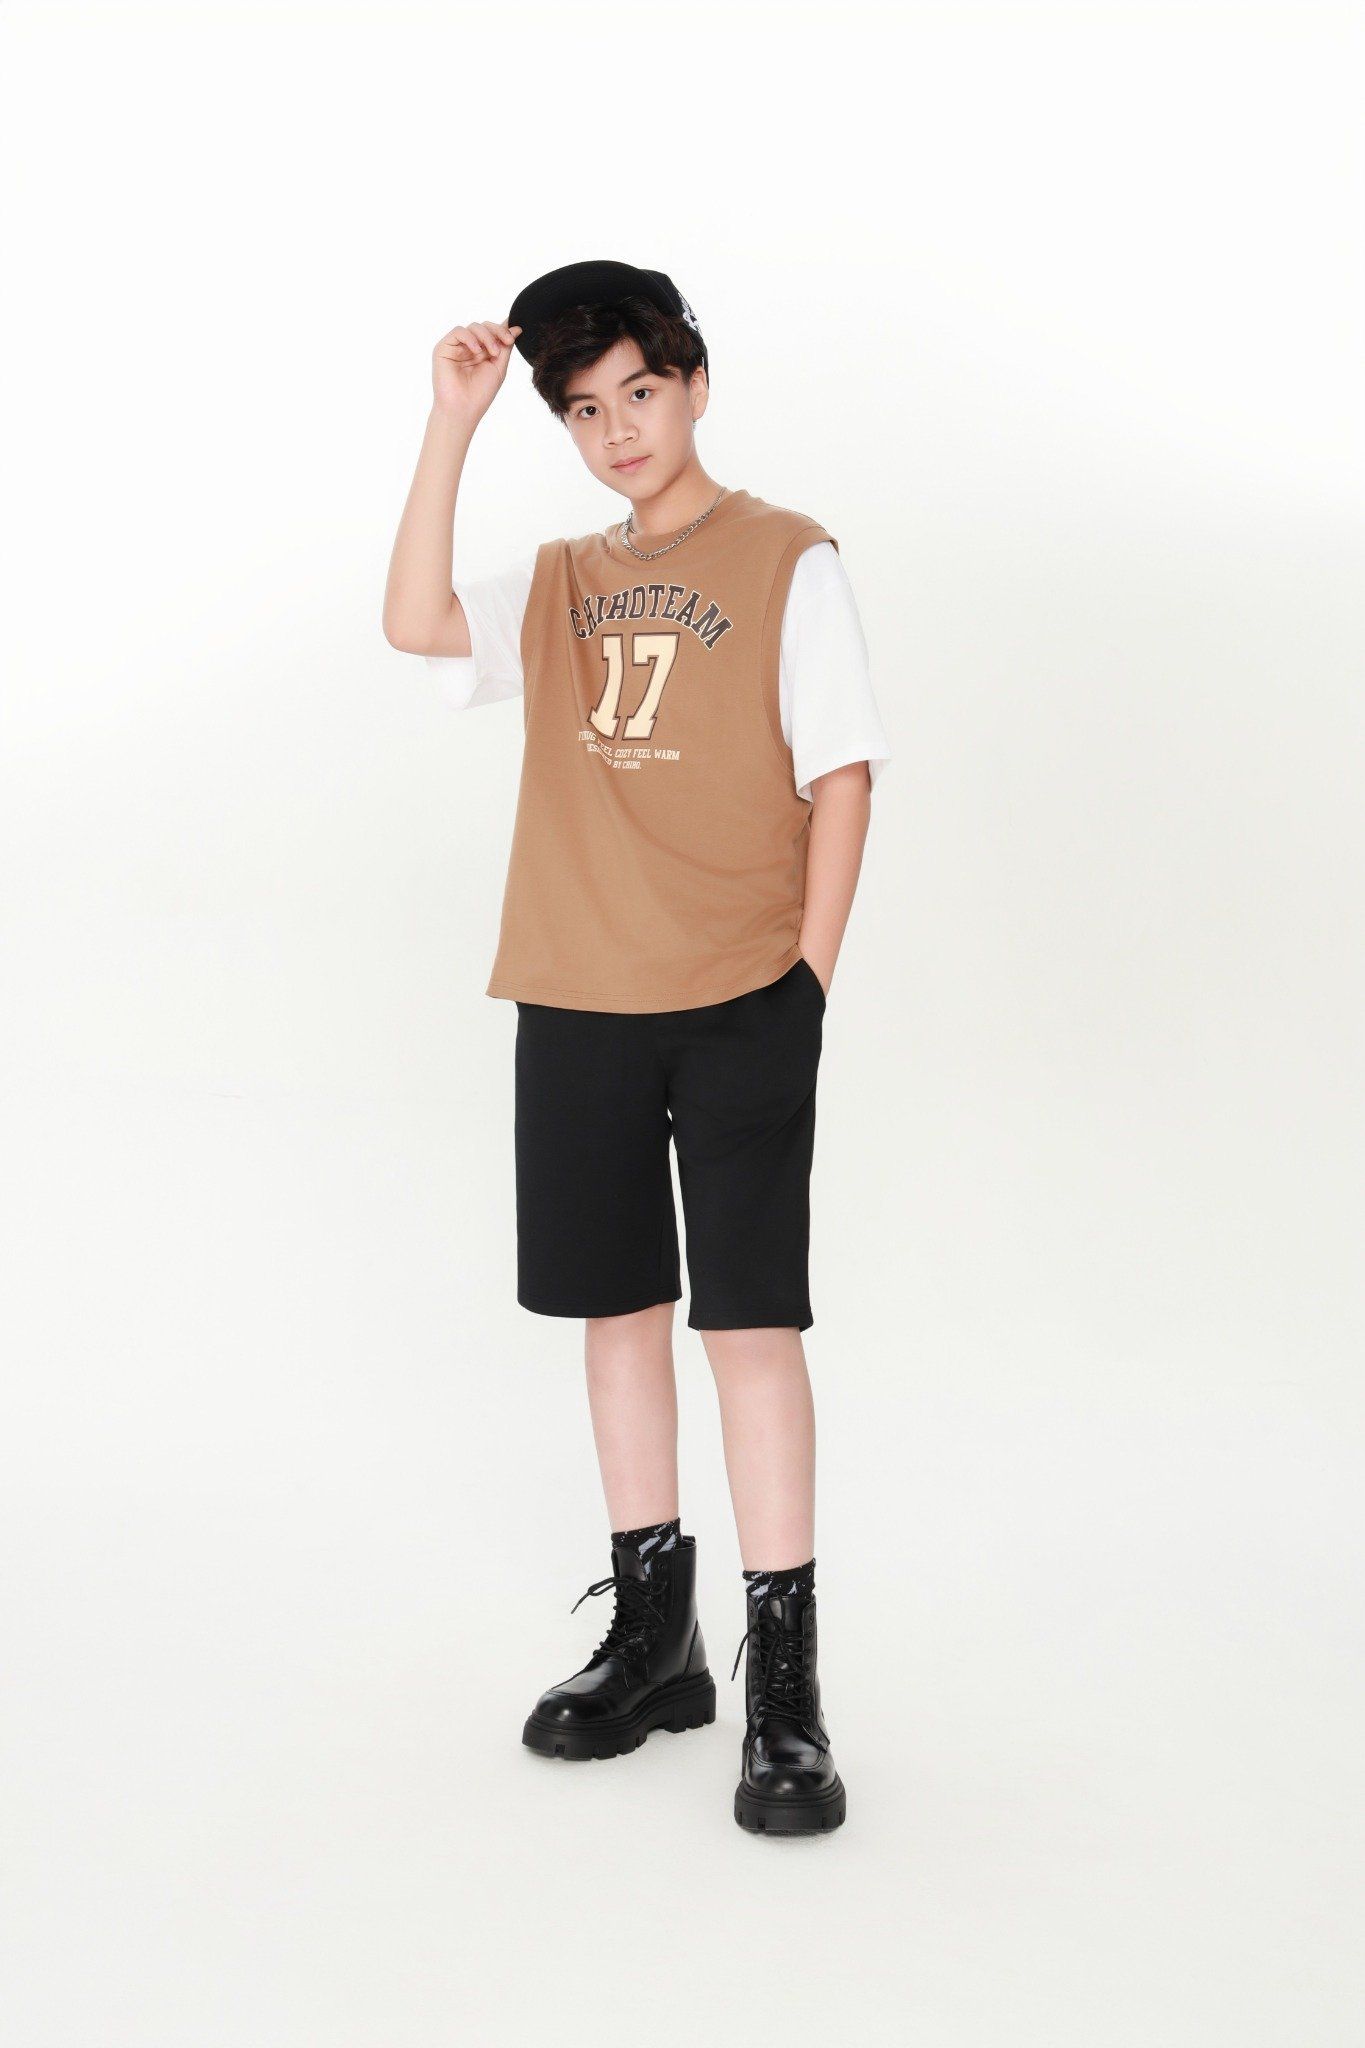  Áo phông teen boy CHIHO TTS407R 